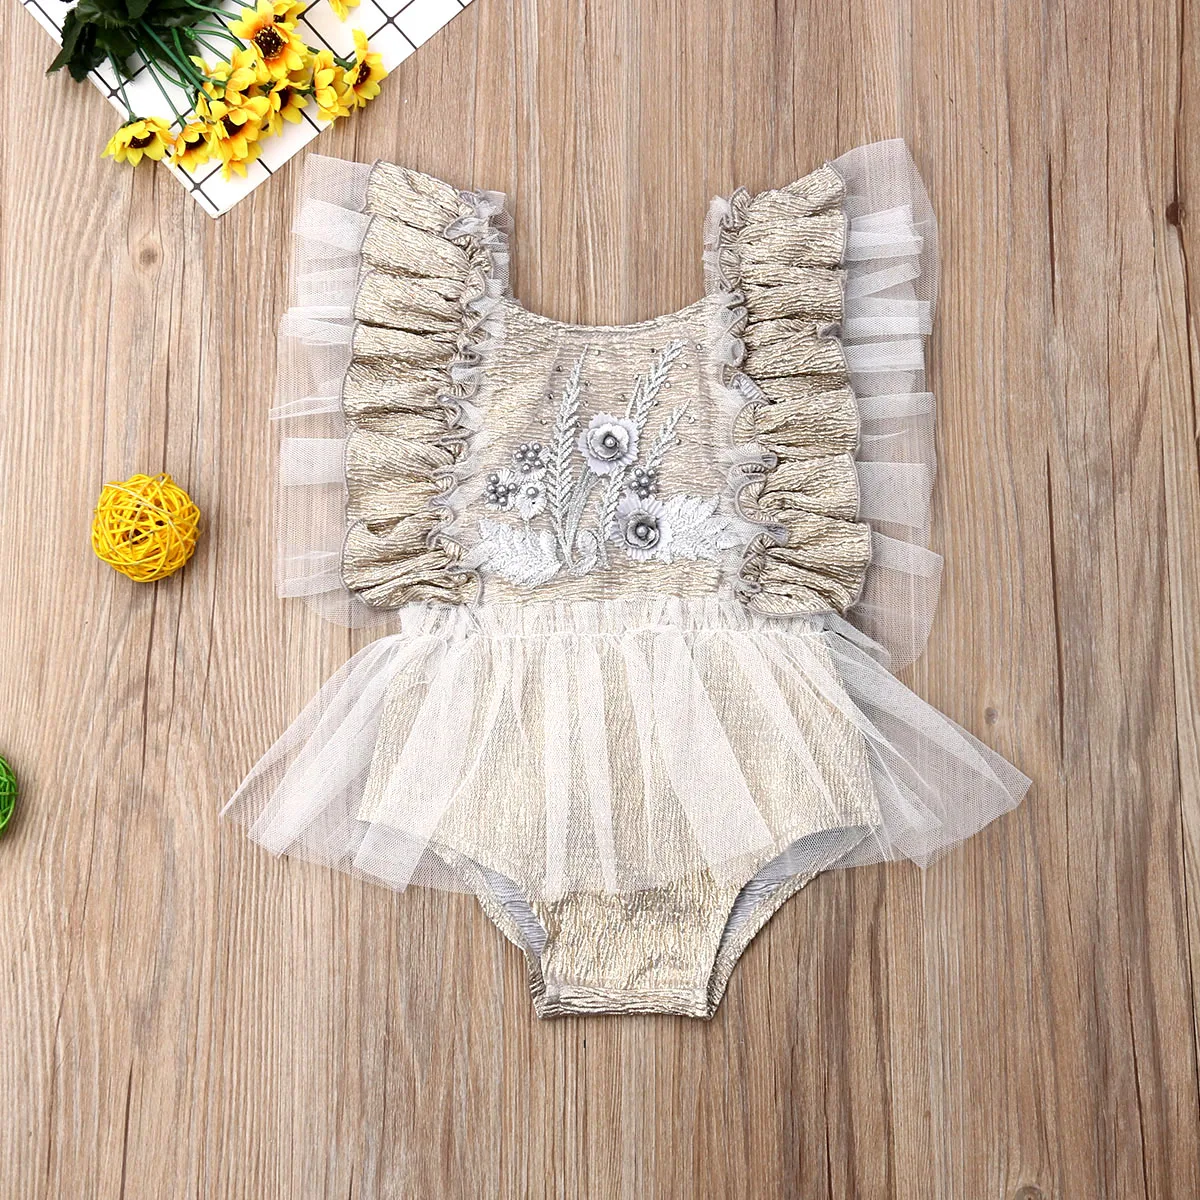 Г. Летняя одежда для малышей боди для новорожденных девочек с рюшами на рукавах и цветочным рисунком, комбинезон с вышивкой шифоновый пляжный костюм, от 3 до 24 месяцев